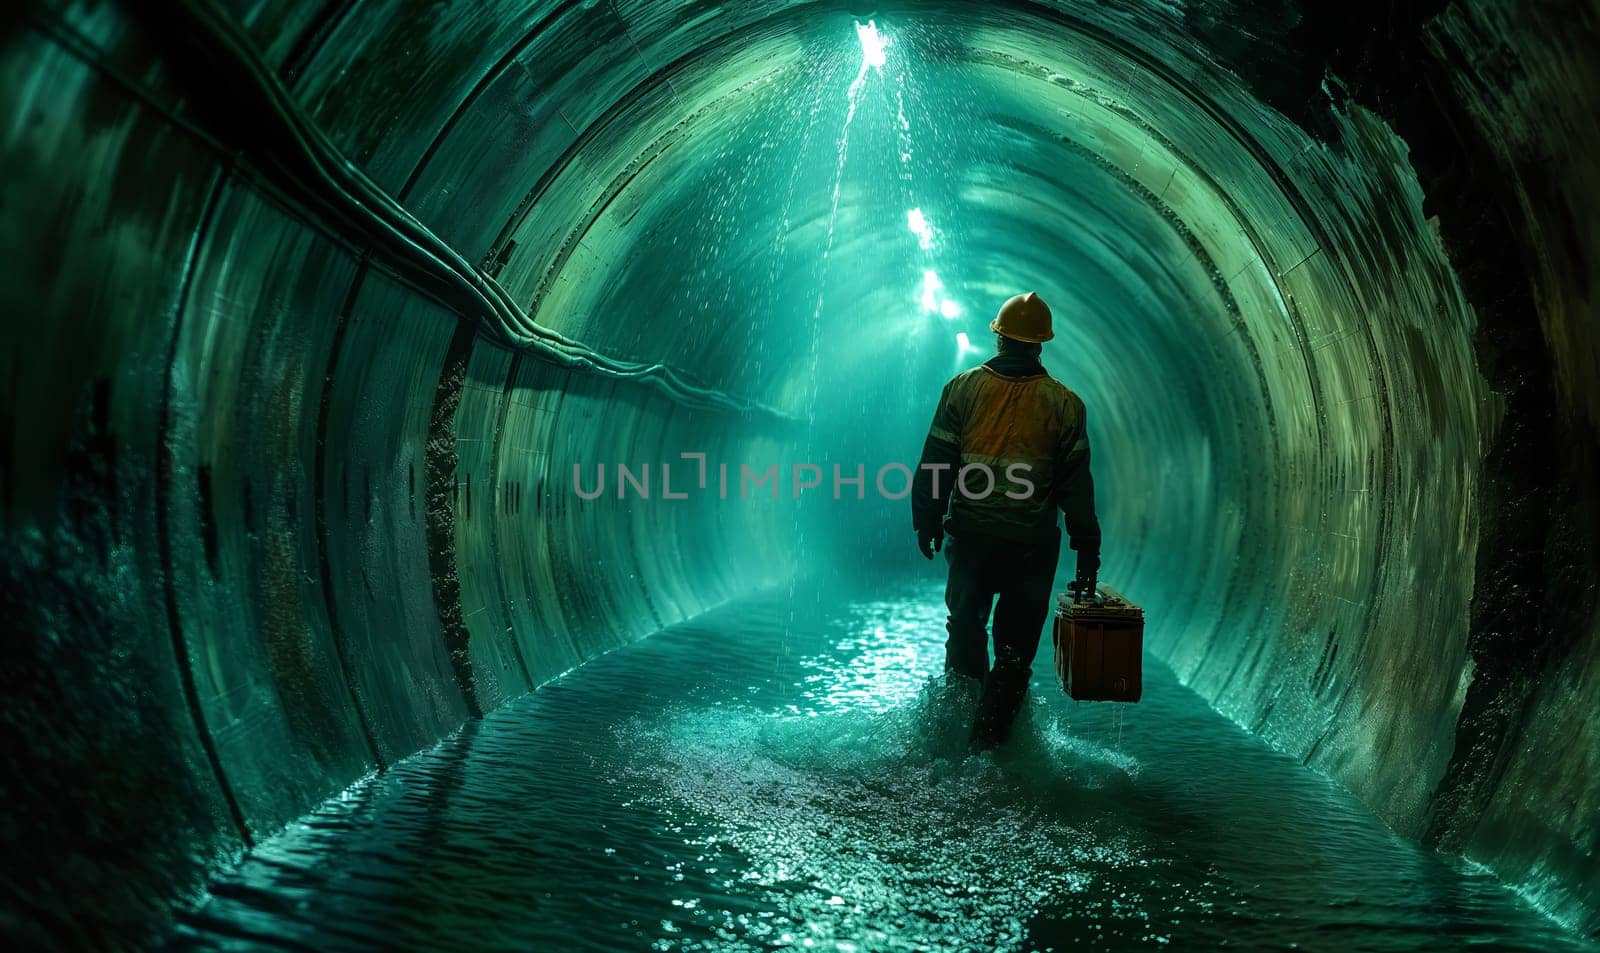 A worker walks in a round tunnel through water. by Fischeron